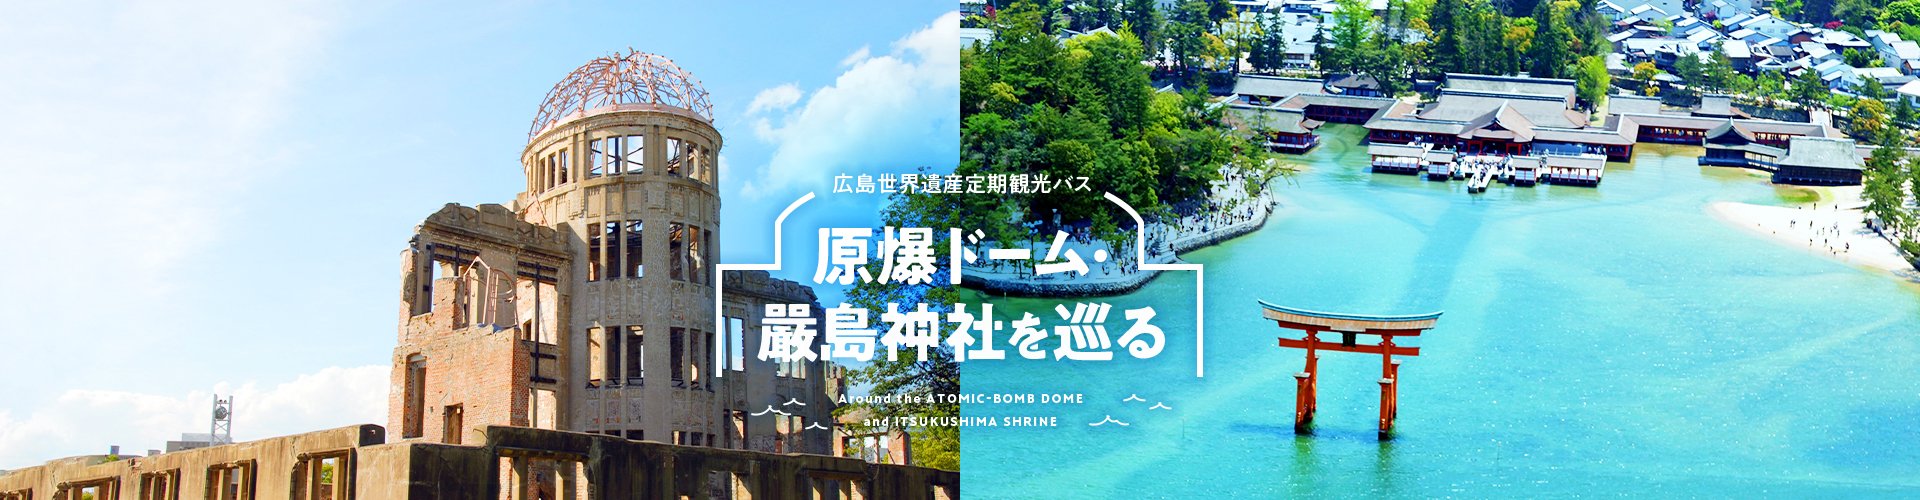 広島世界遺産定期観光バス 原爆ドーム・嚴島神社を巡る